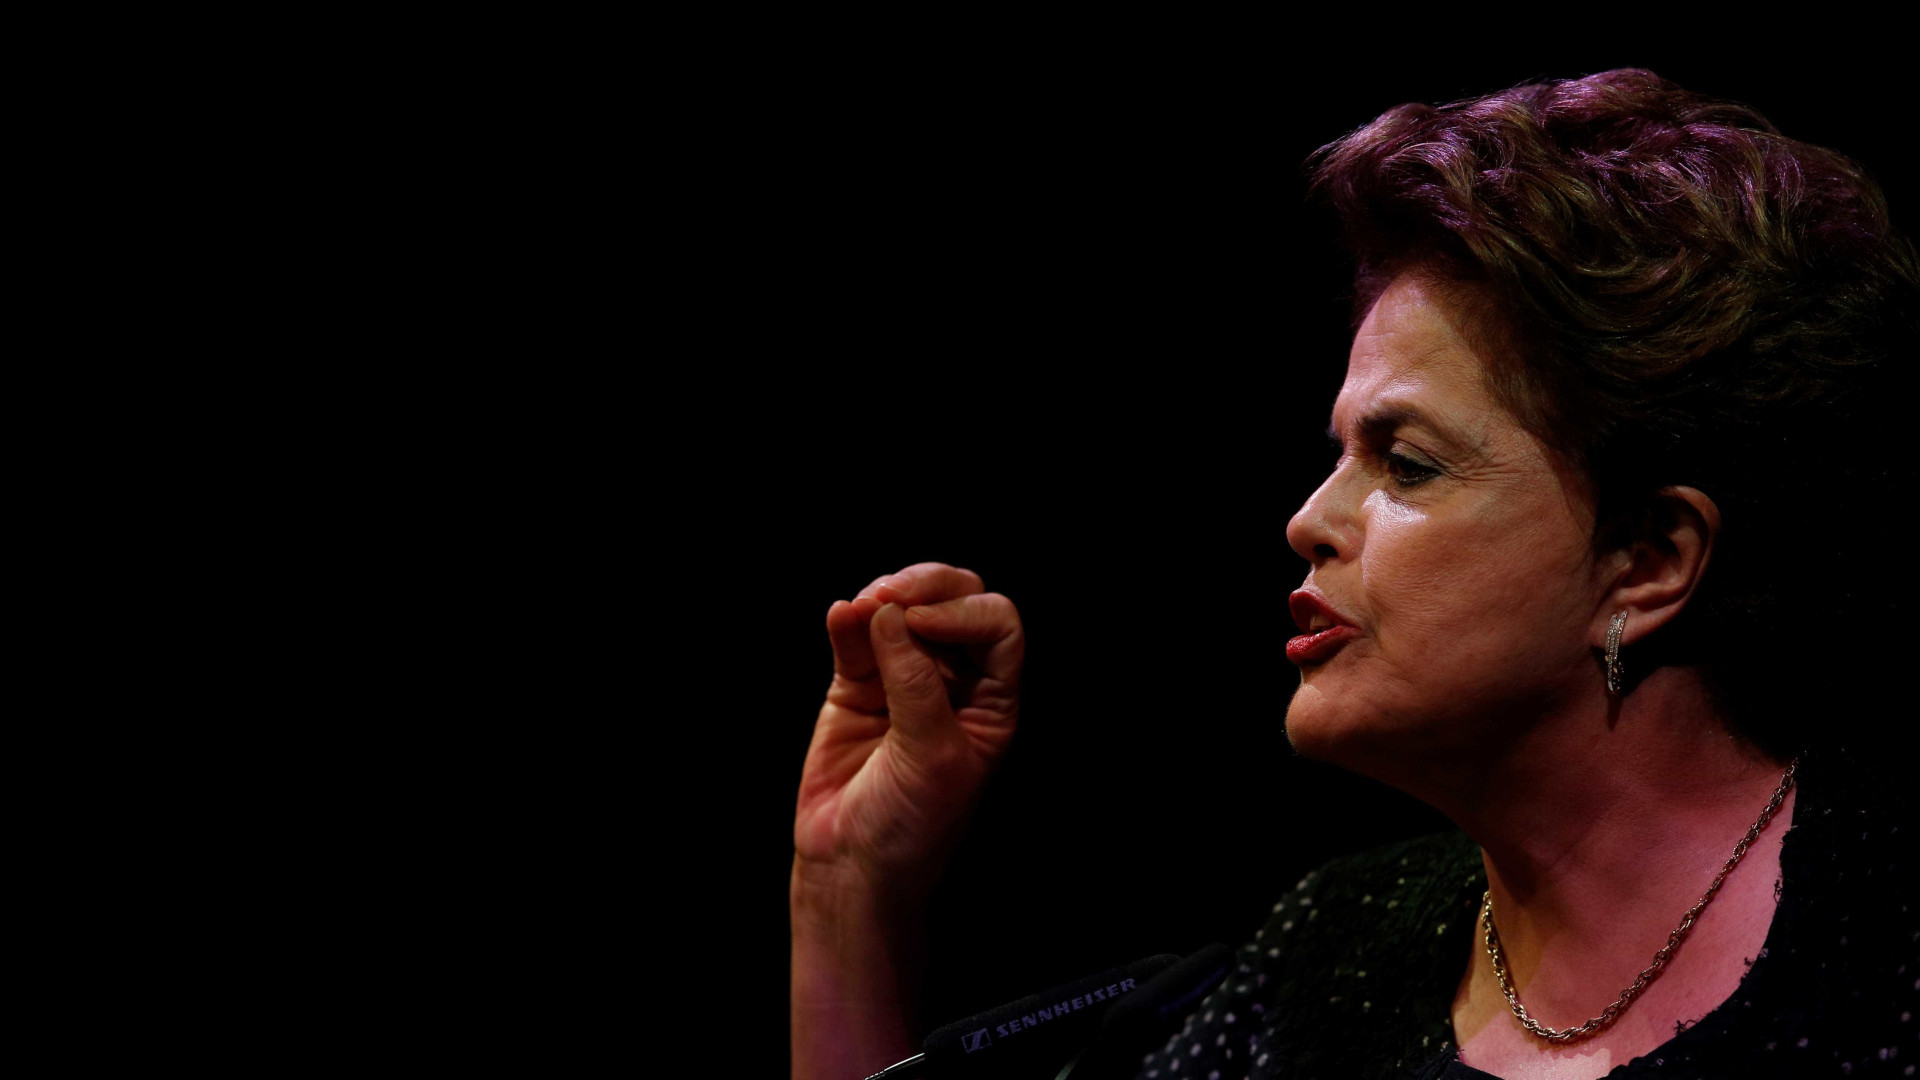 Dilma diz que Palocci mentiu em delação premiada à PF
